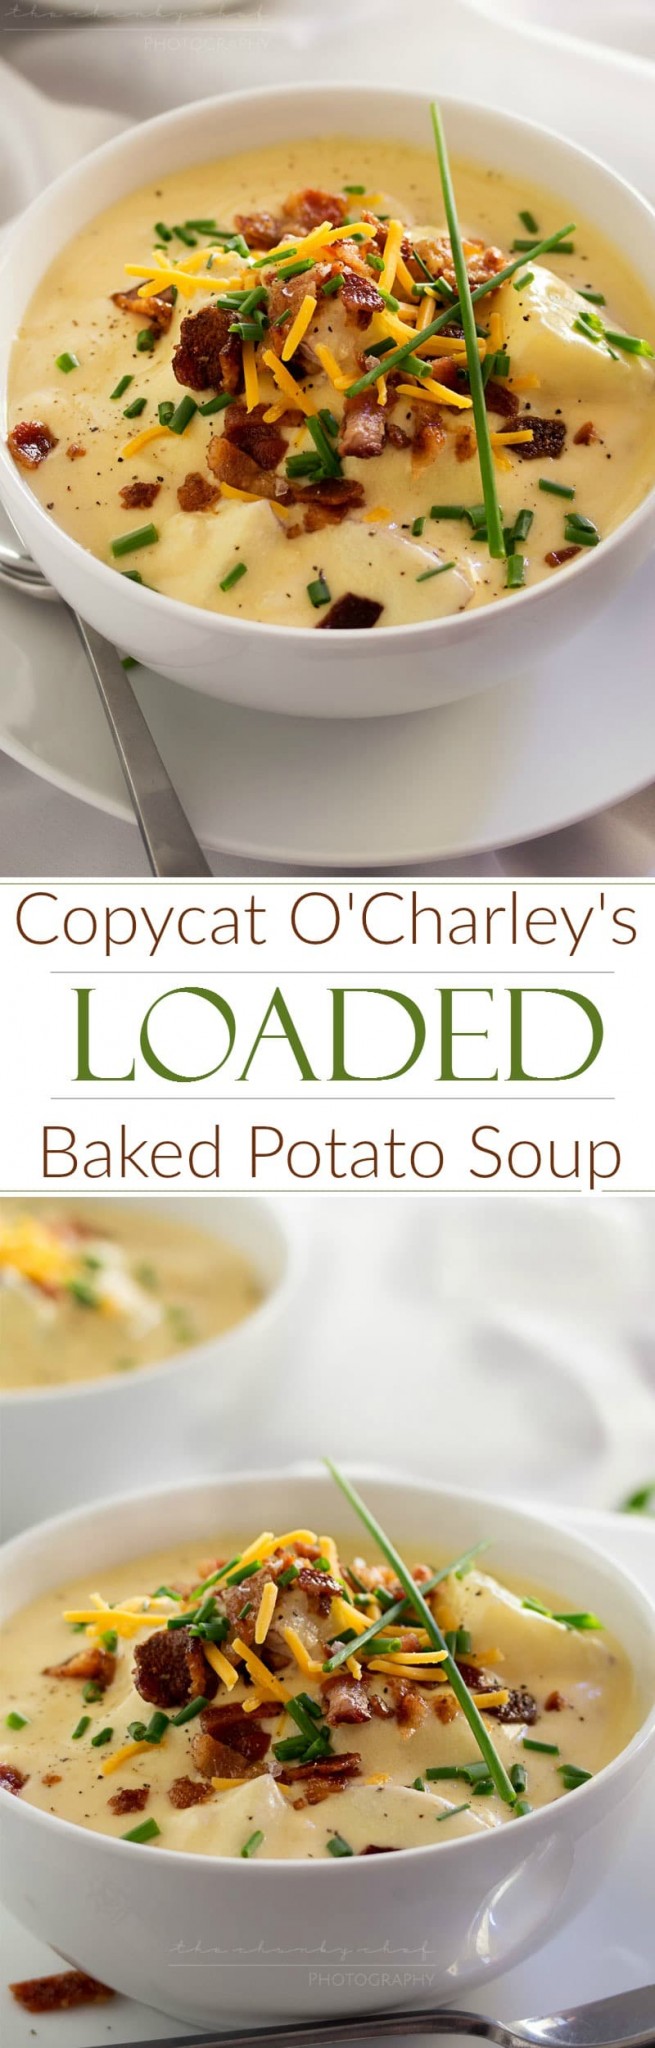 Copycat Loaded Baked Potato Soup - The Chunky Chef